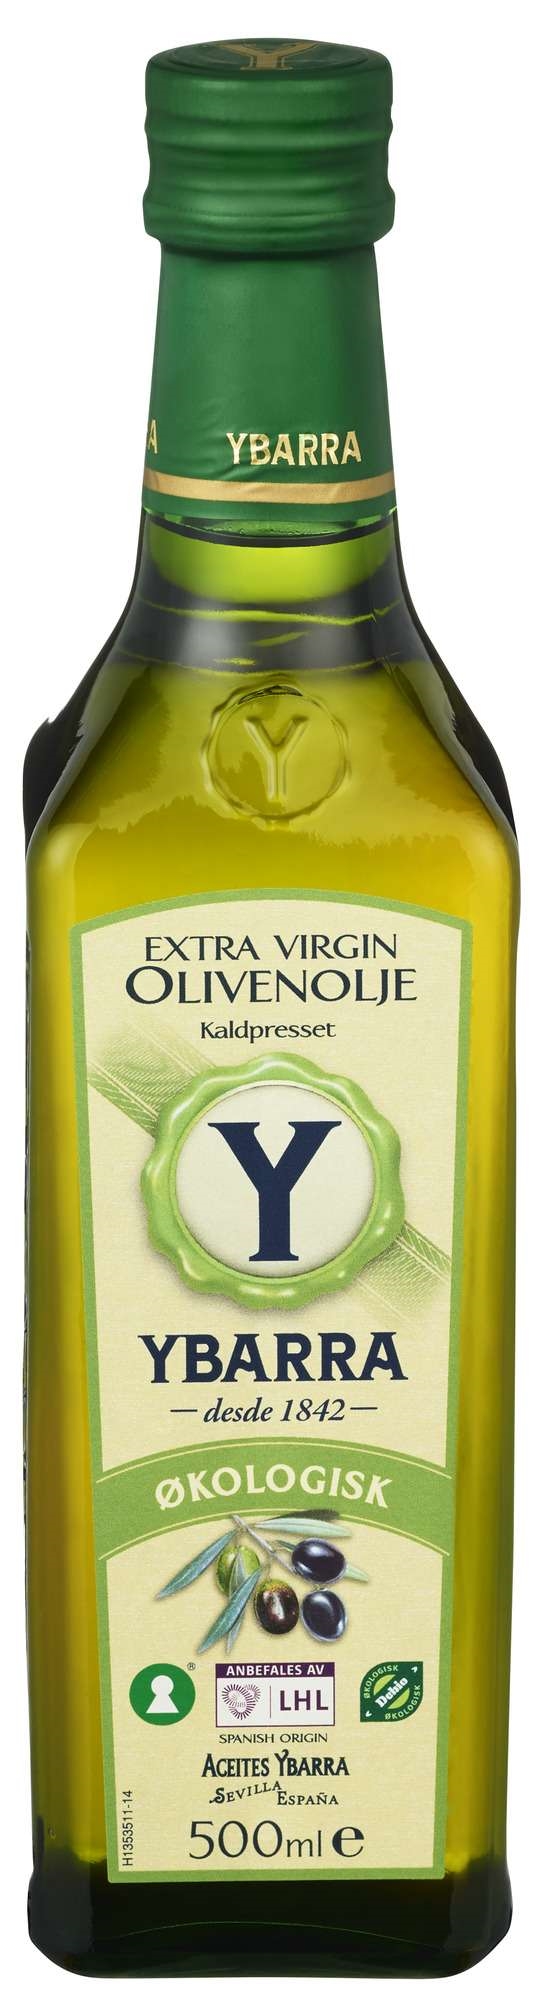 Extra virgin olivenolje økol.   500ml